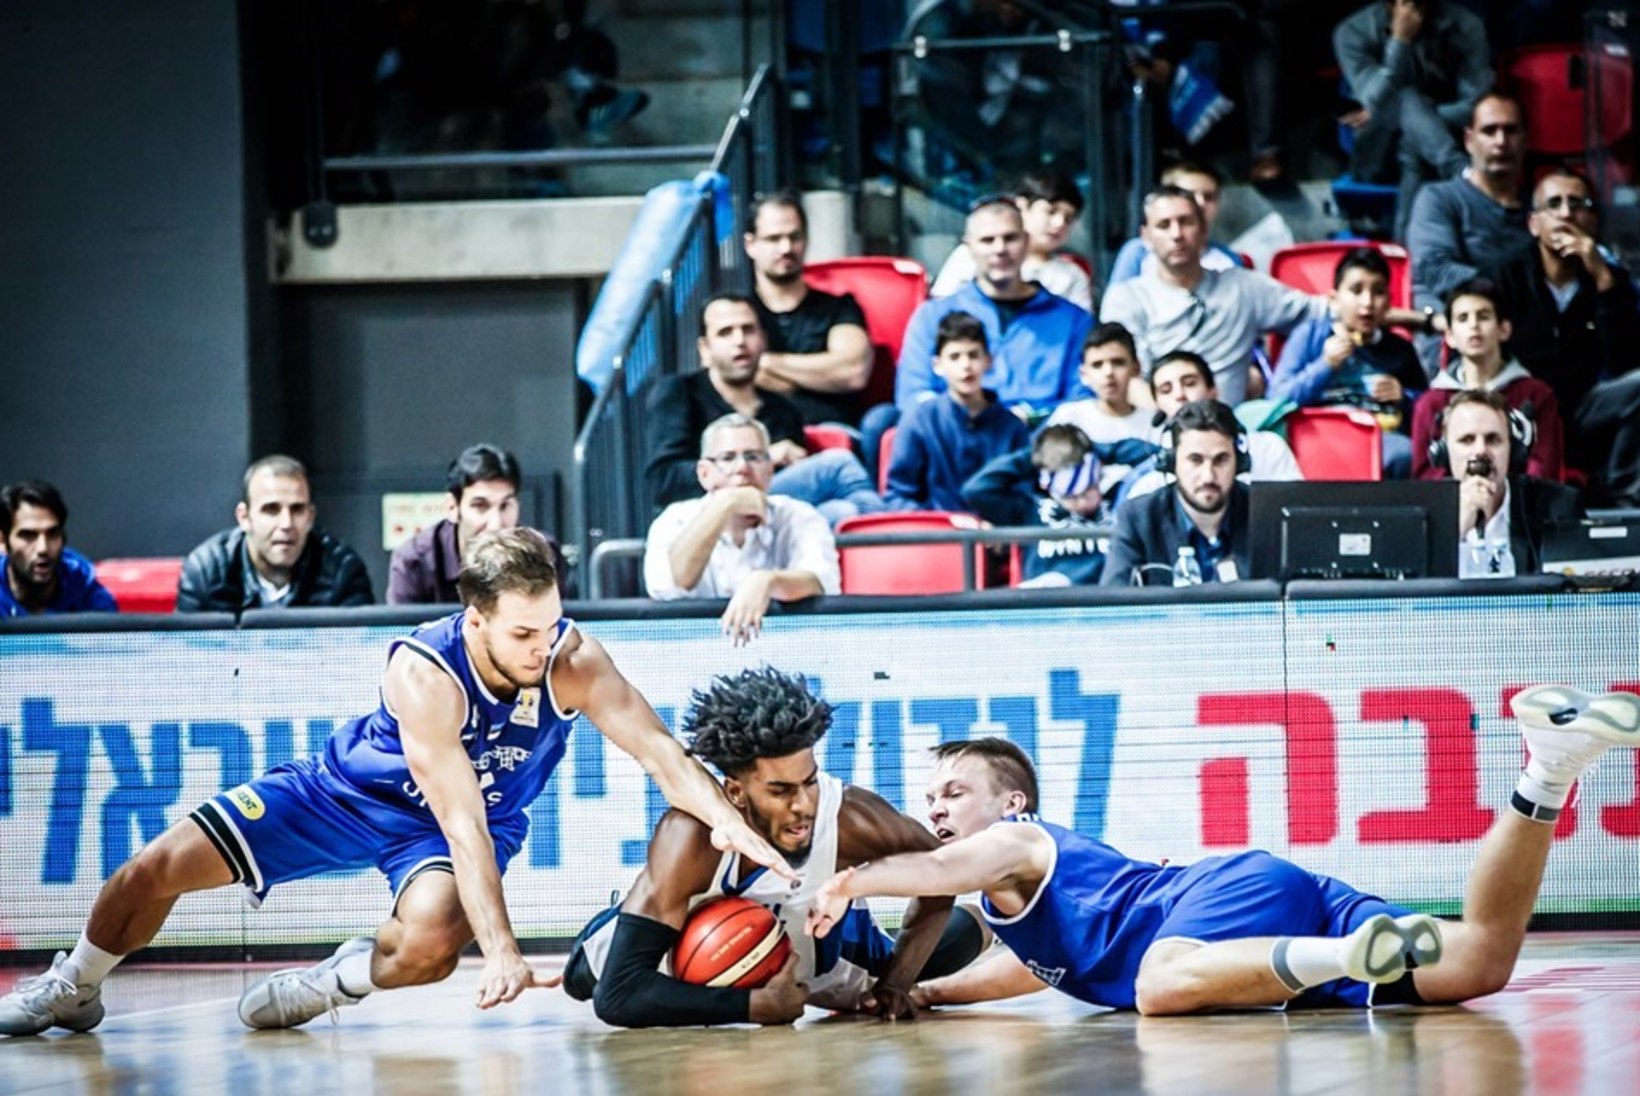 GALERII | Iisraeli korvpallikoondis murdis eestlased täismaja publiku ees põlvili 